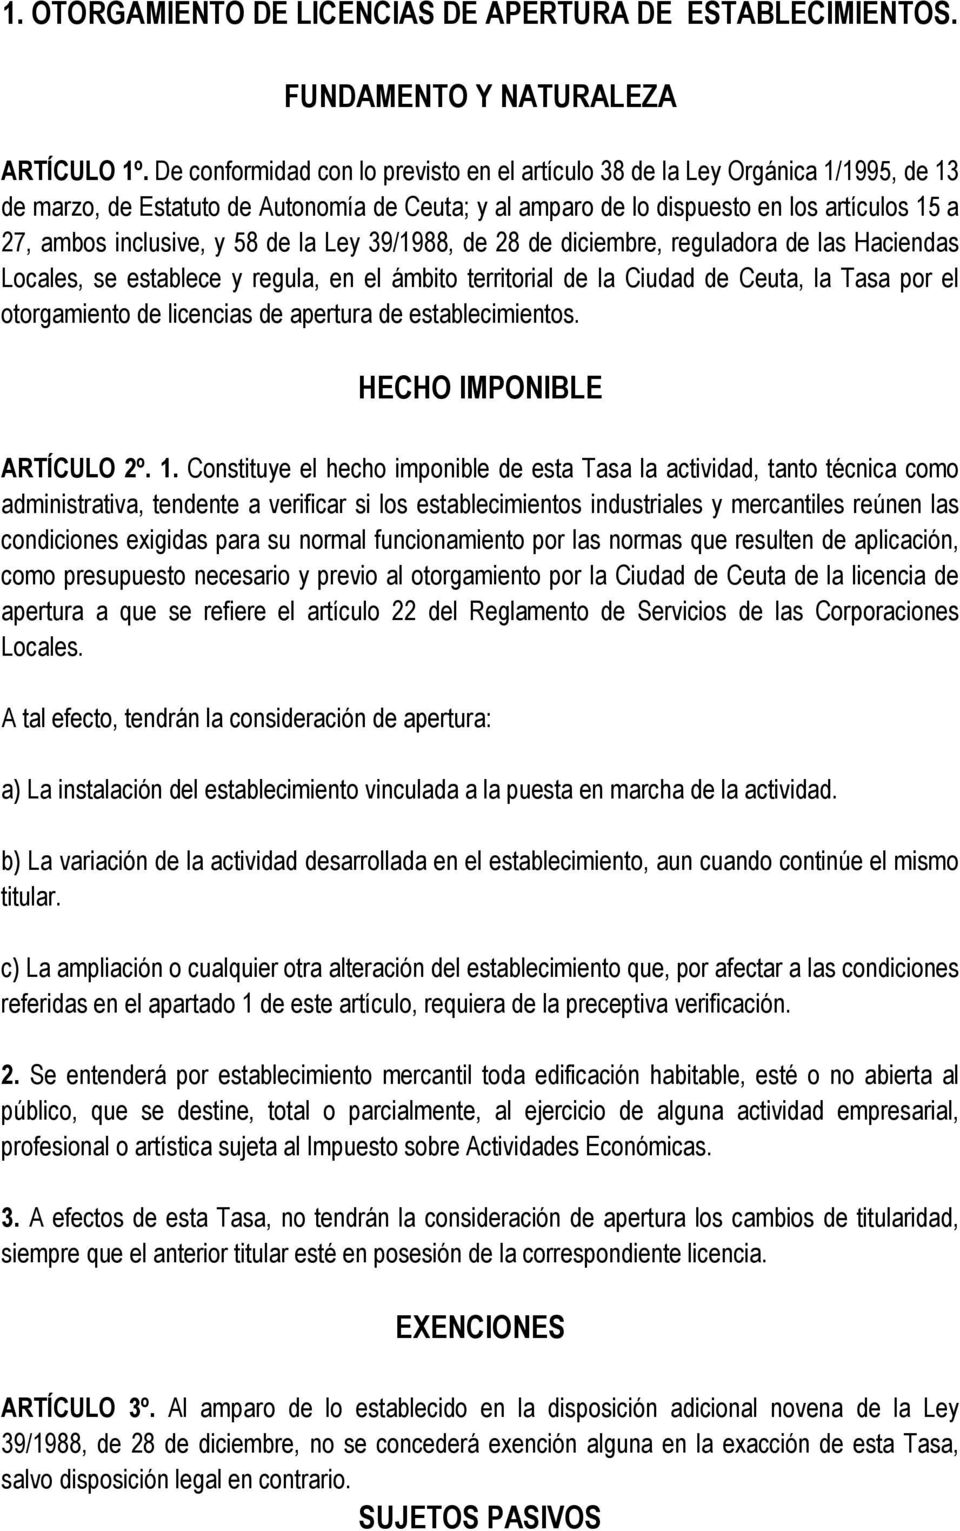 58 de la Ley 39/1988, de 28 de diciembre, reguladora de las Haciendas Locales, se establece y regula, en el ámbito territorial de la Ciudad de Ceuta, la Tasa por el otorgamiento de licencias de